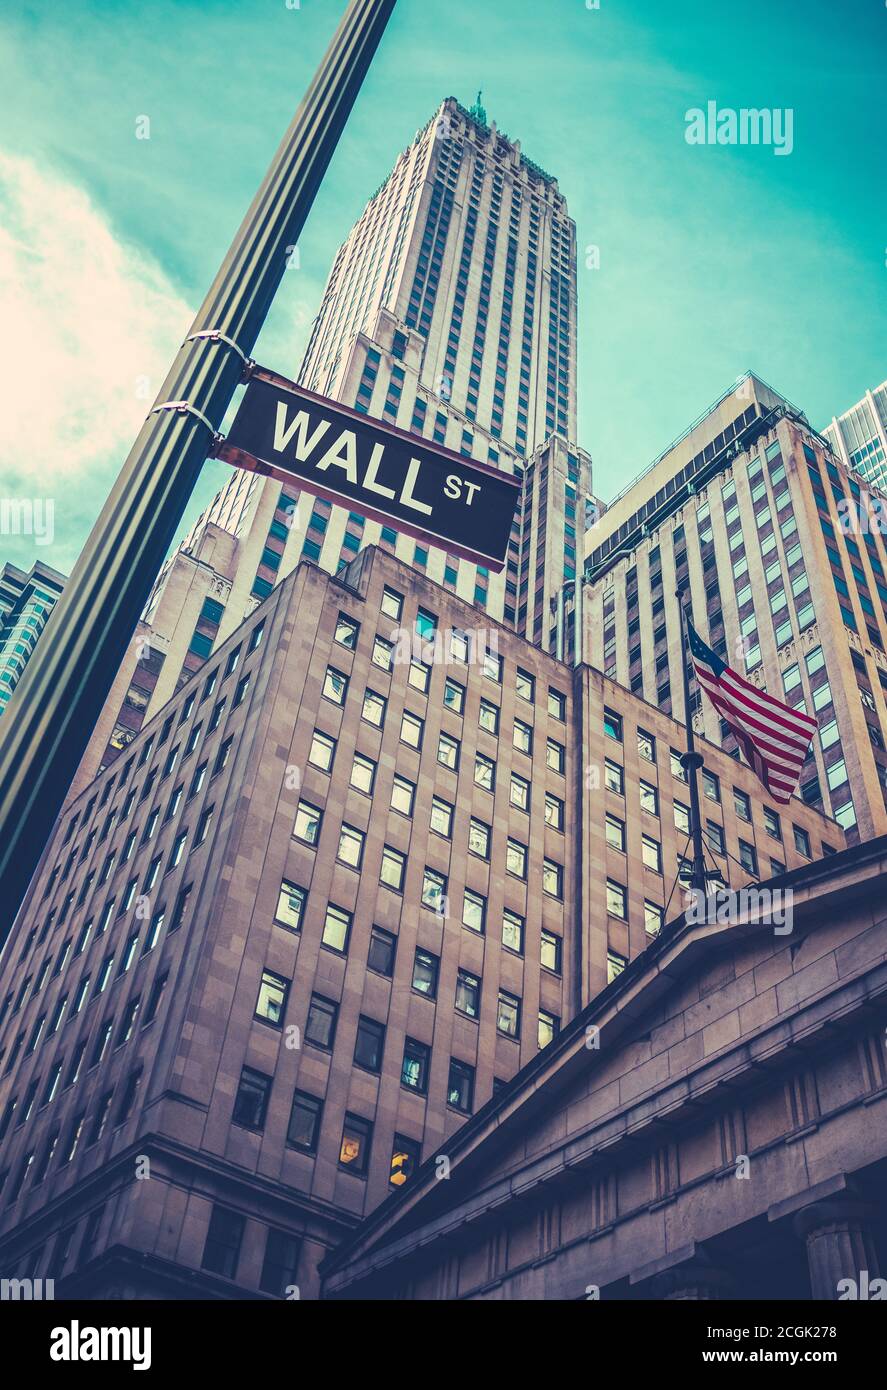 Ein Schild für die Wall Street in Lower Manhattan, New York, mit Wolkenkratzern dahinter Stockfoto